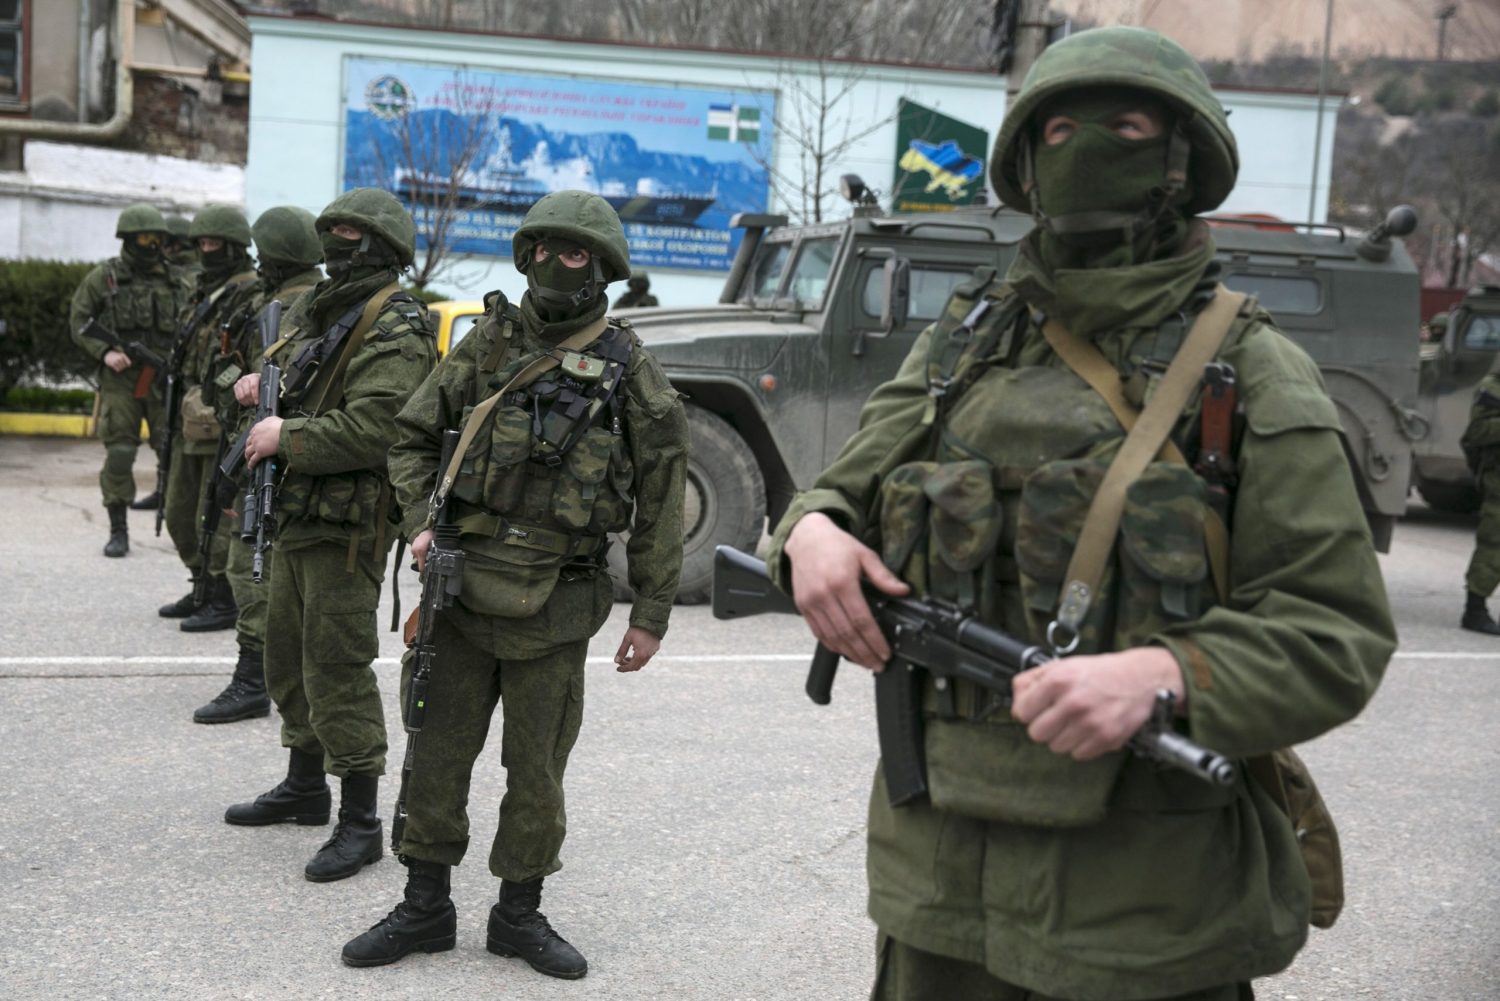 Russia’s Crimean crimes demand tougher sanctions